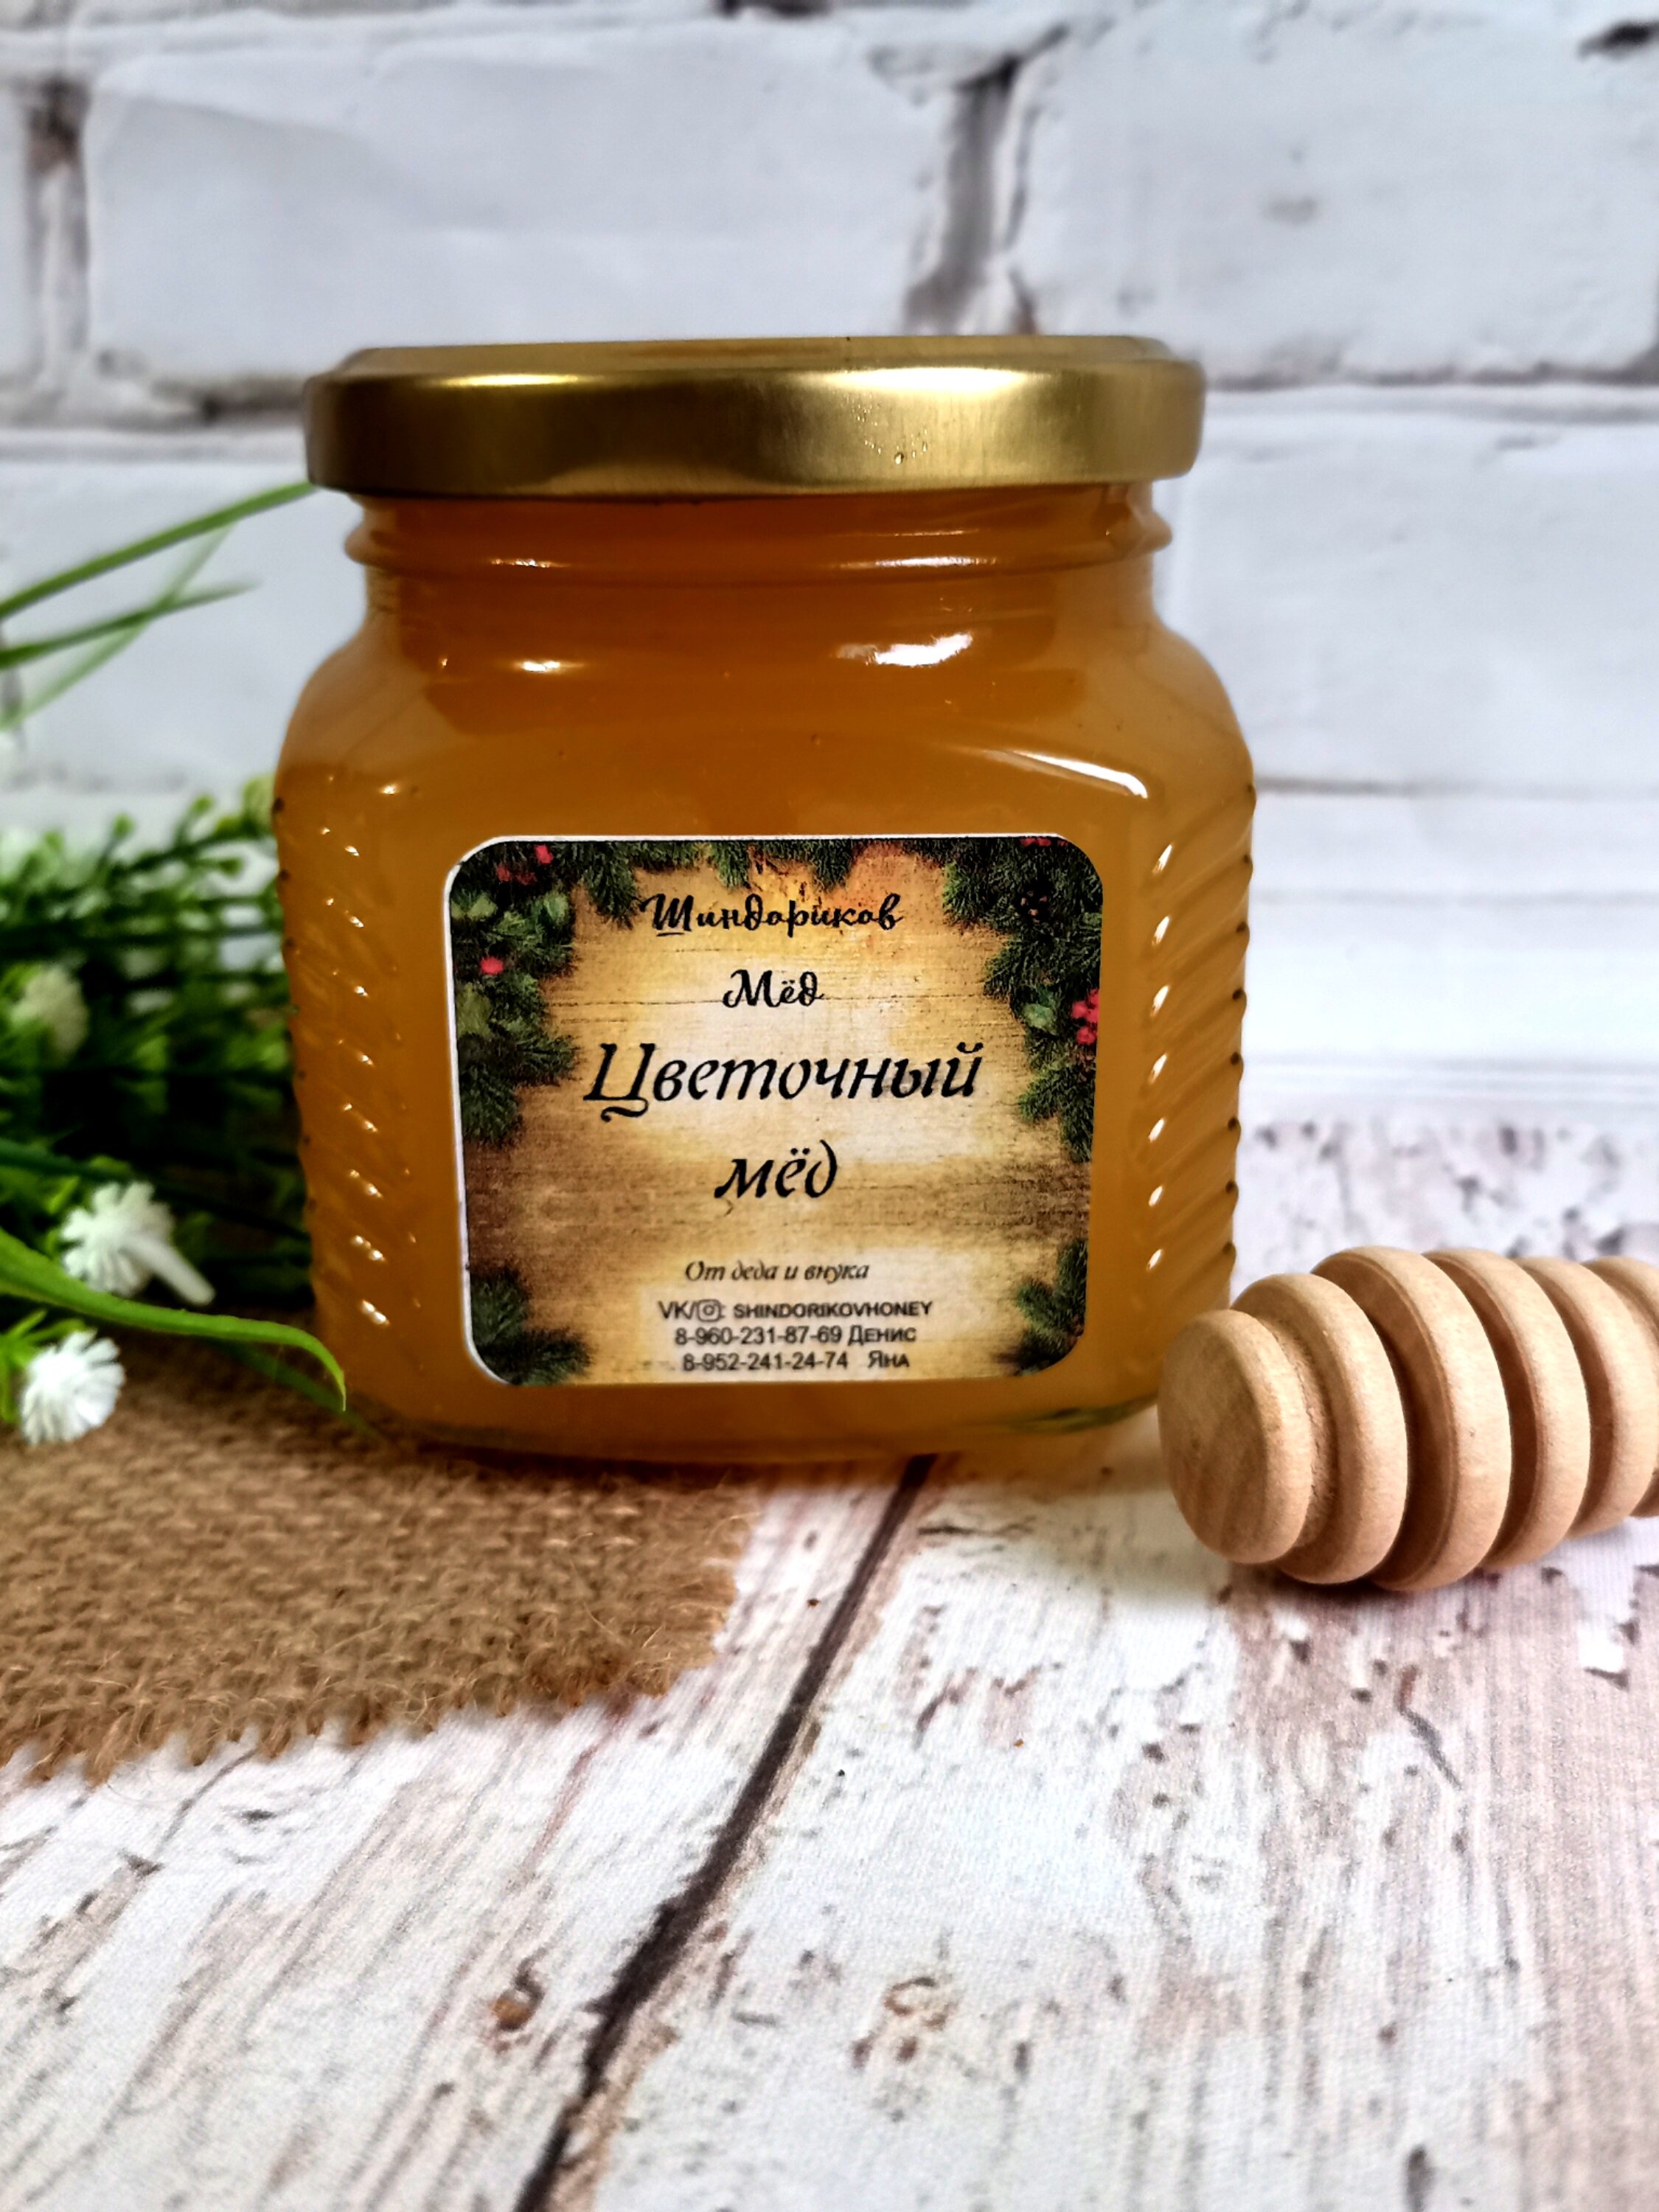 Мёд северный цветочный с личной пасеки, Шиндориков Мед, 375 г, сбор 2021 г /без сахара /без добавок/без нагрева - фотография № 2